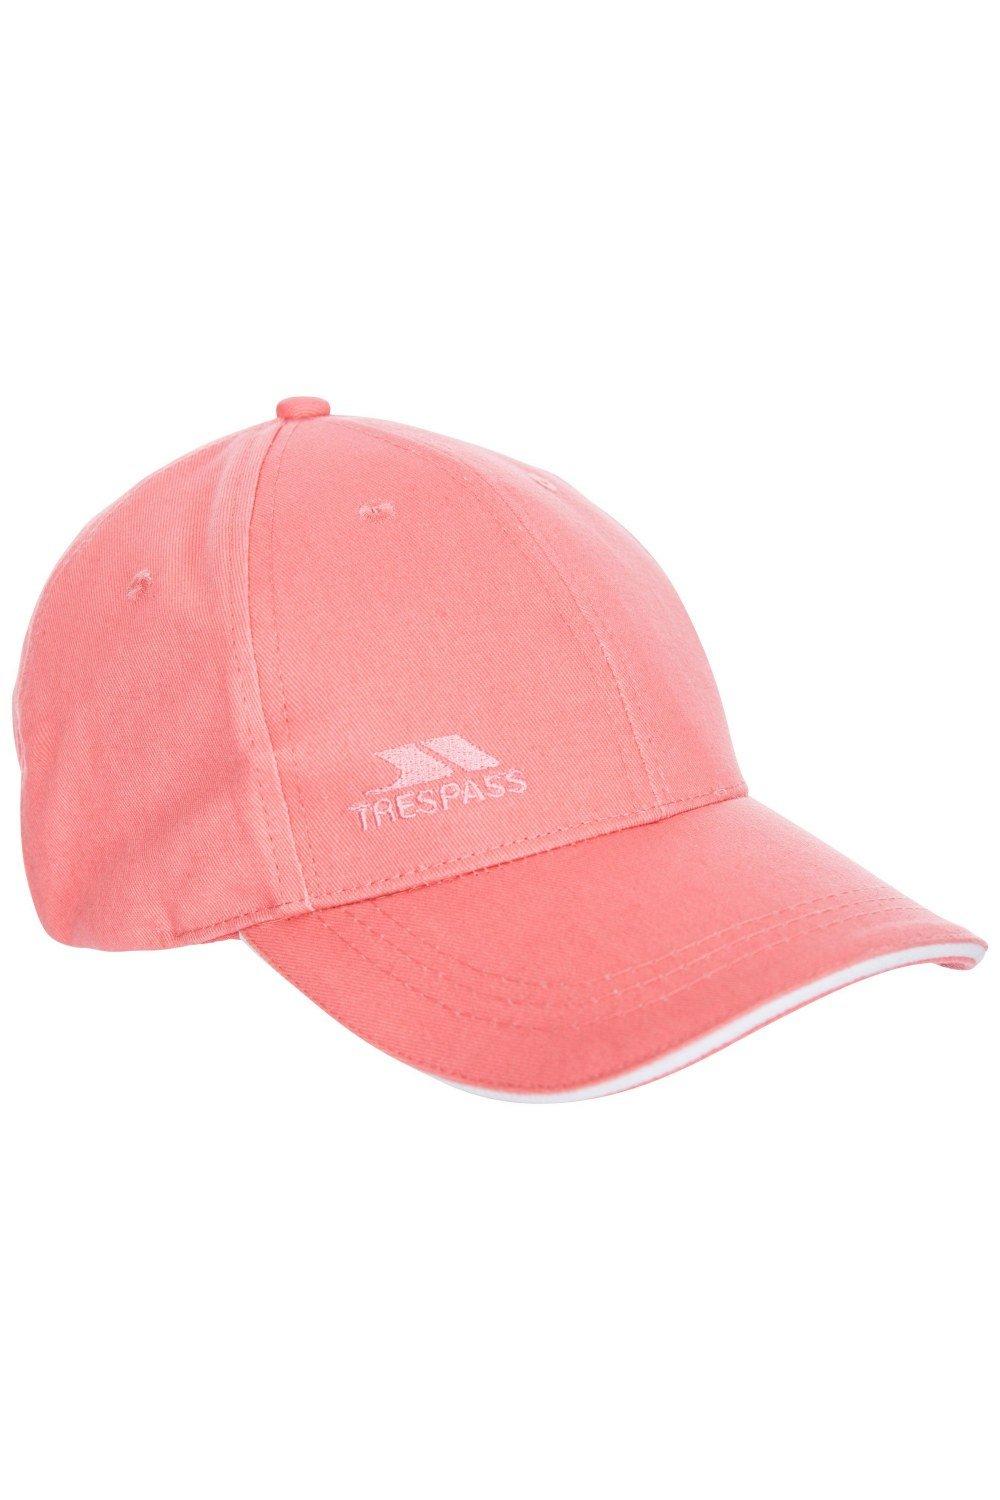 Карриганская кепка Trespass, розовый